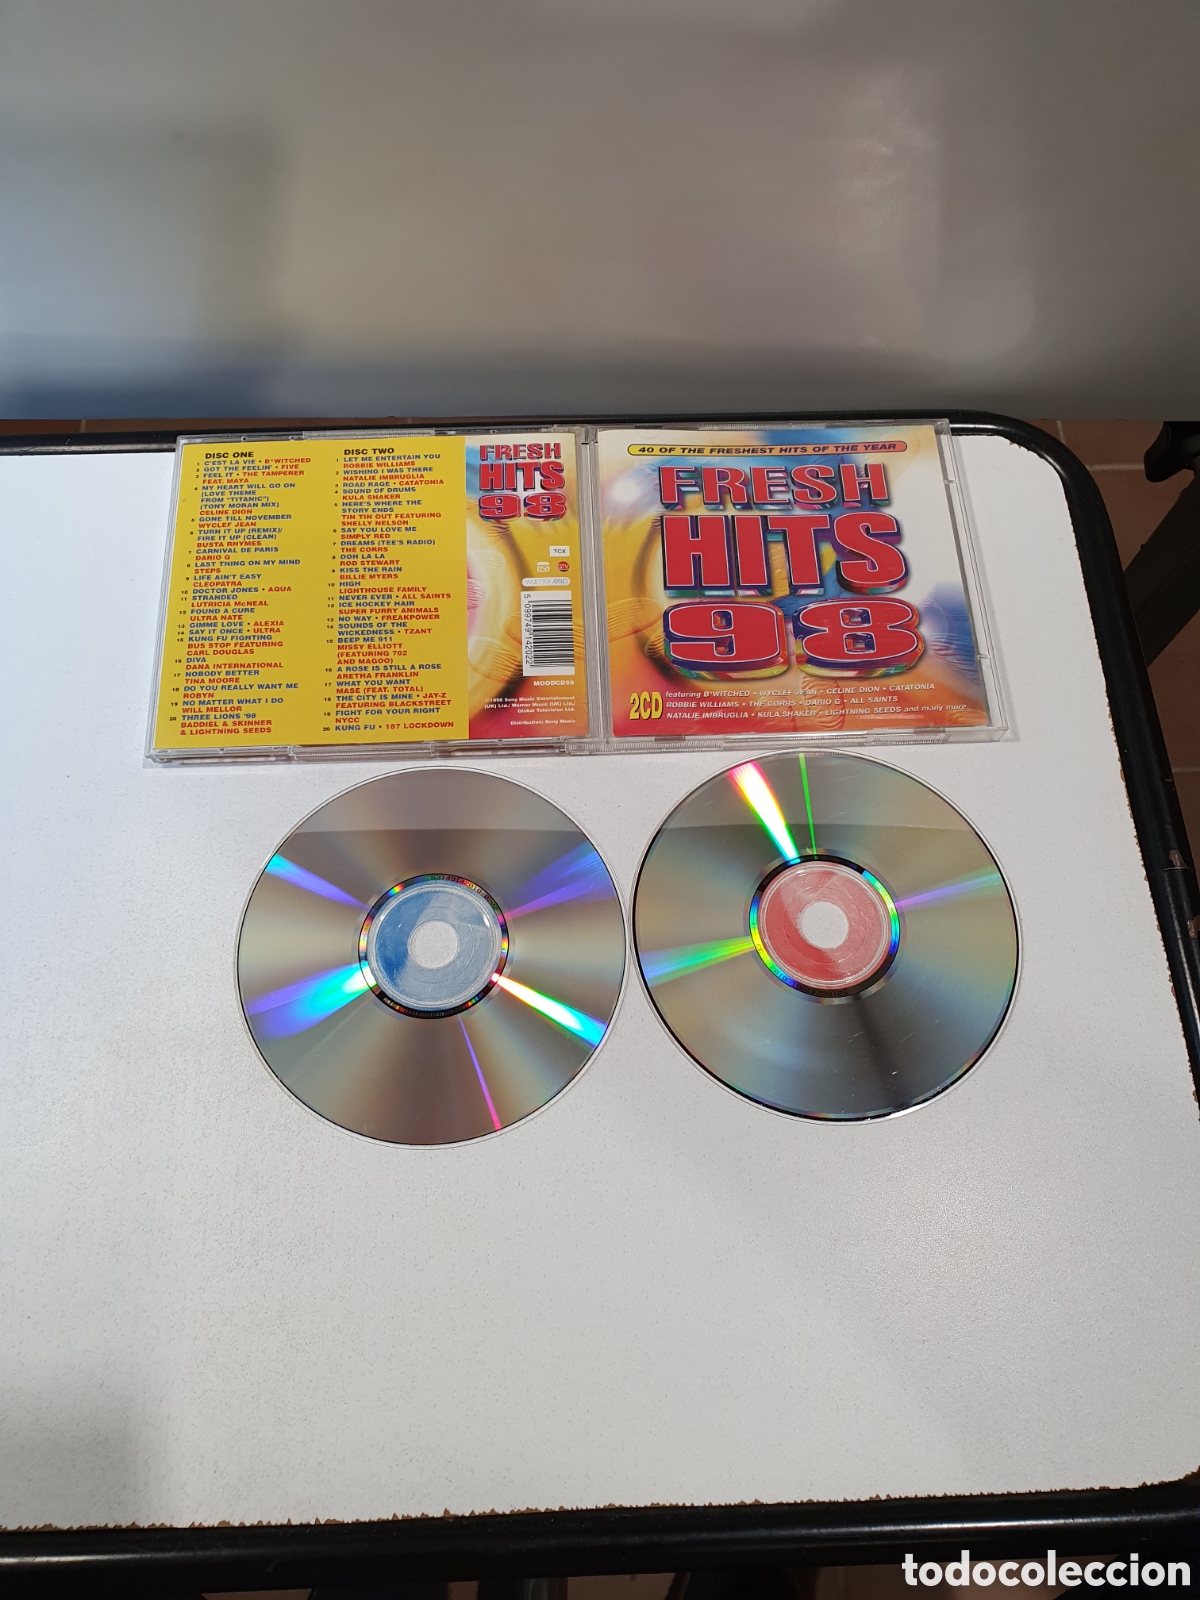 hits　Música　fresh　álbum　98,　cd,　todocoleccion　recopilatorio,　CD　Comprar　de　Pop　no　86.　x